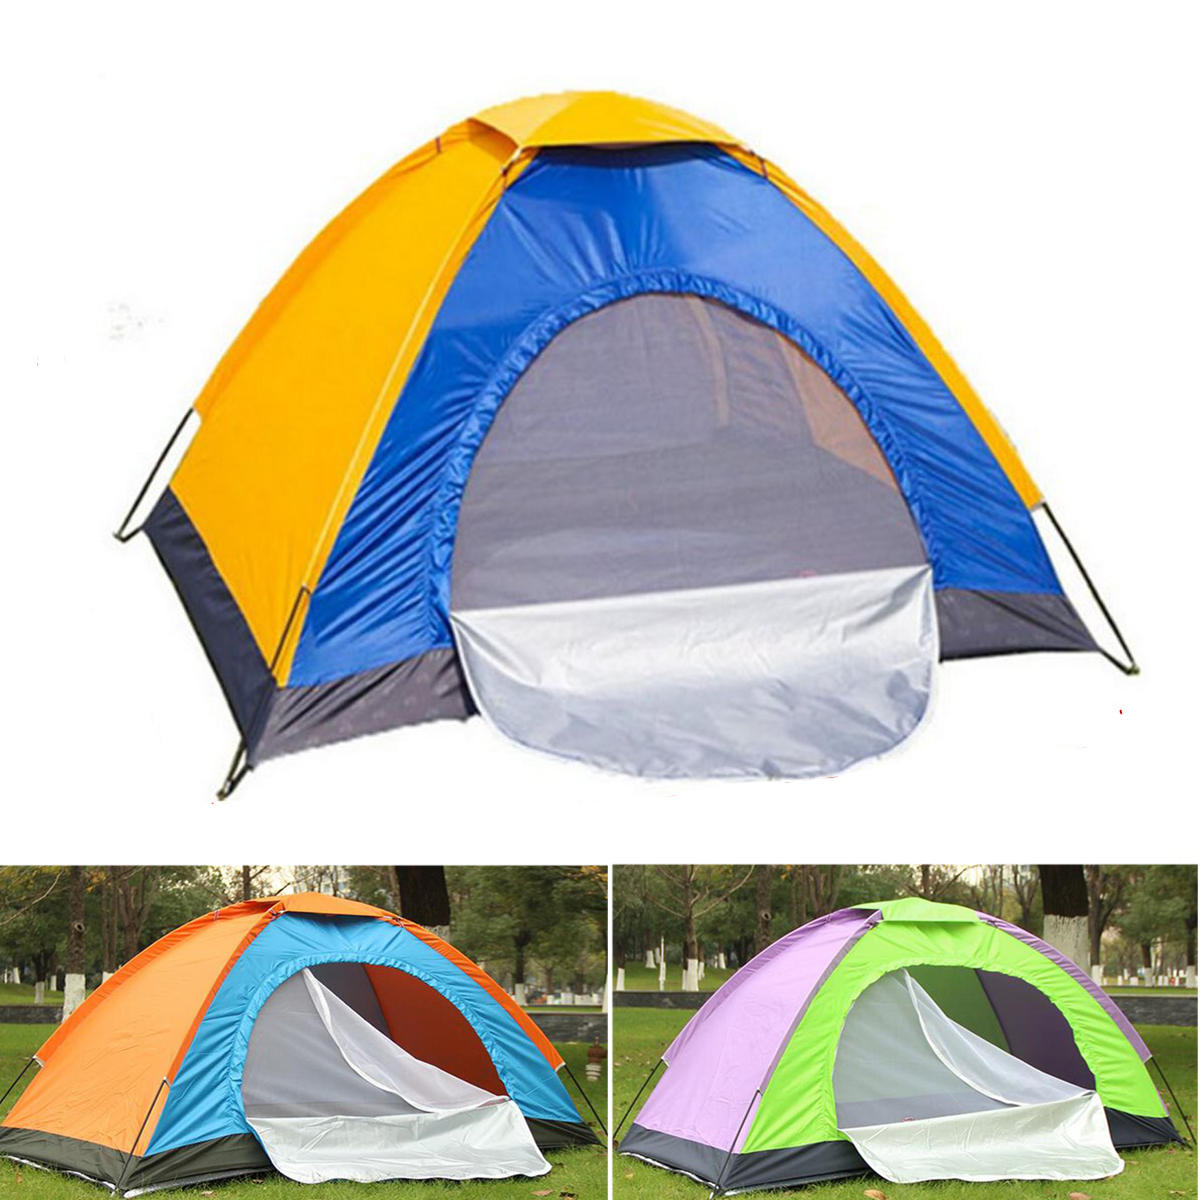 Tente individuelle portable pour le camping en plein air, étanche, abri contre le soleil sur la plage